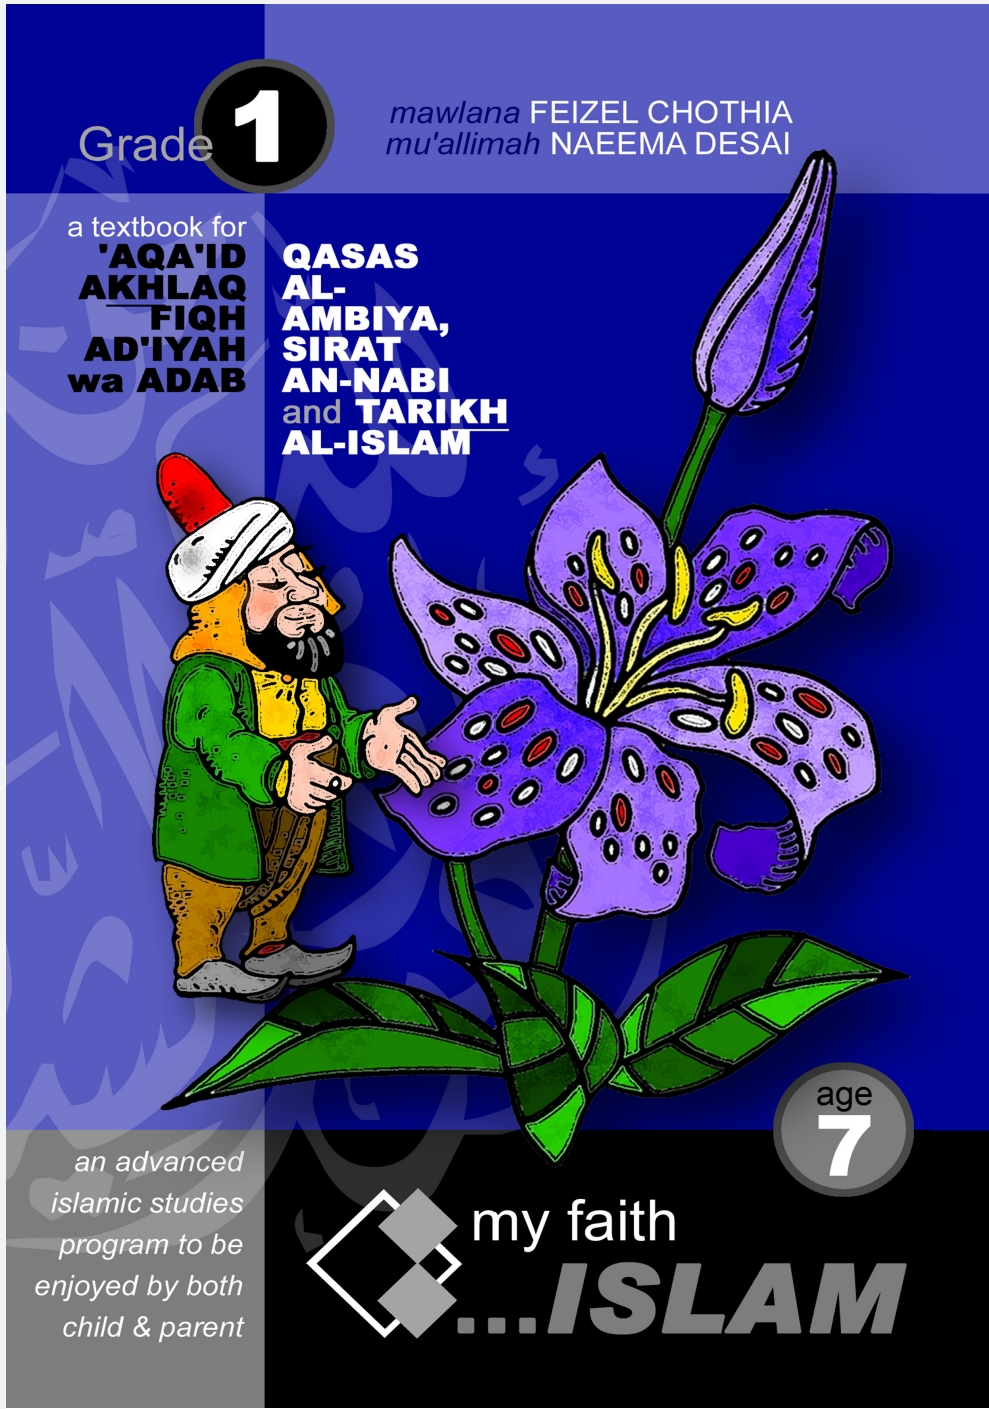 My Faith Islam 7 Fiqh & Adiyat